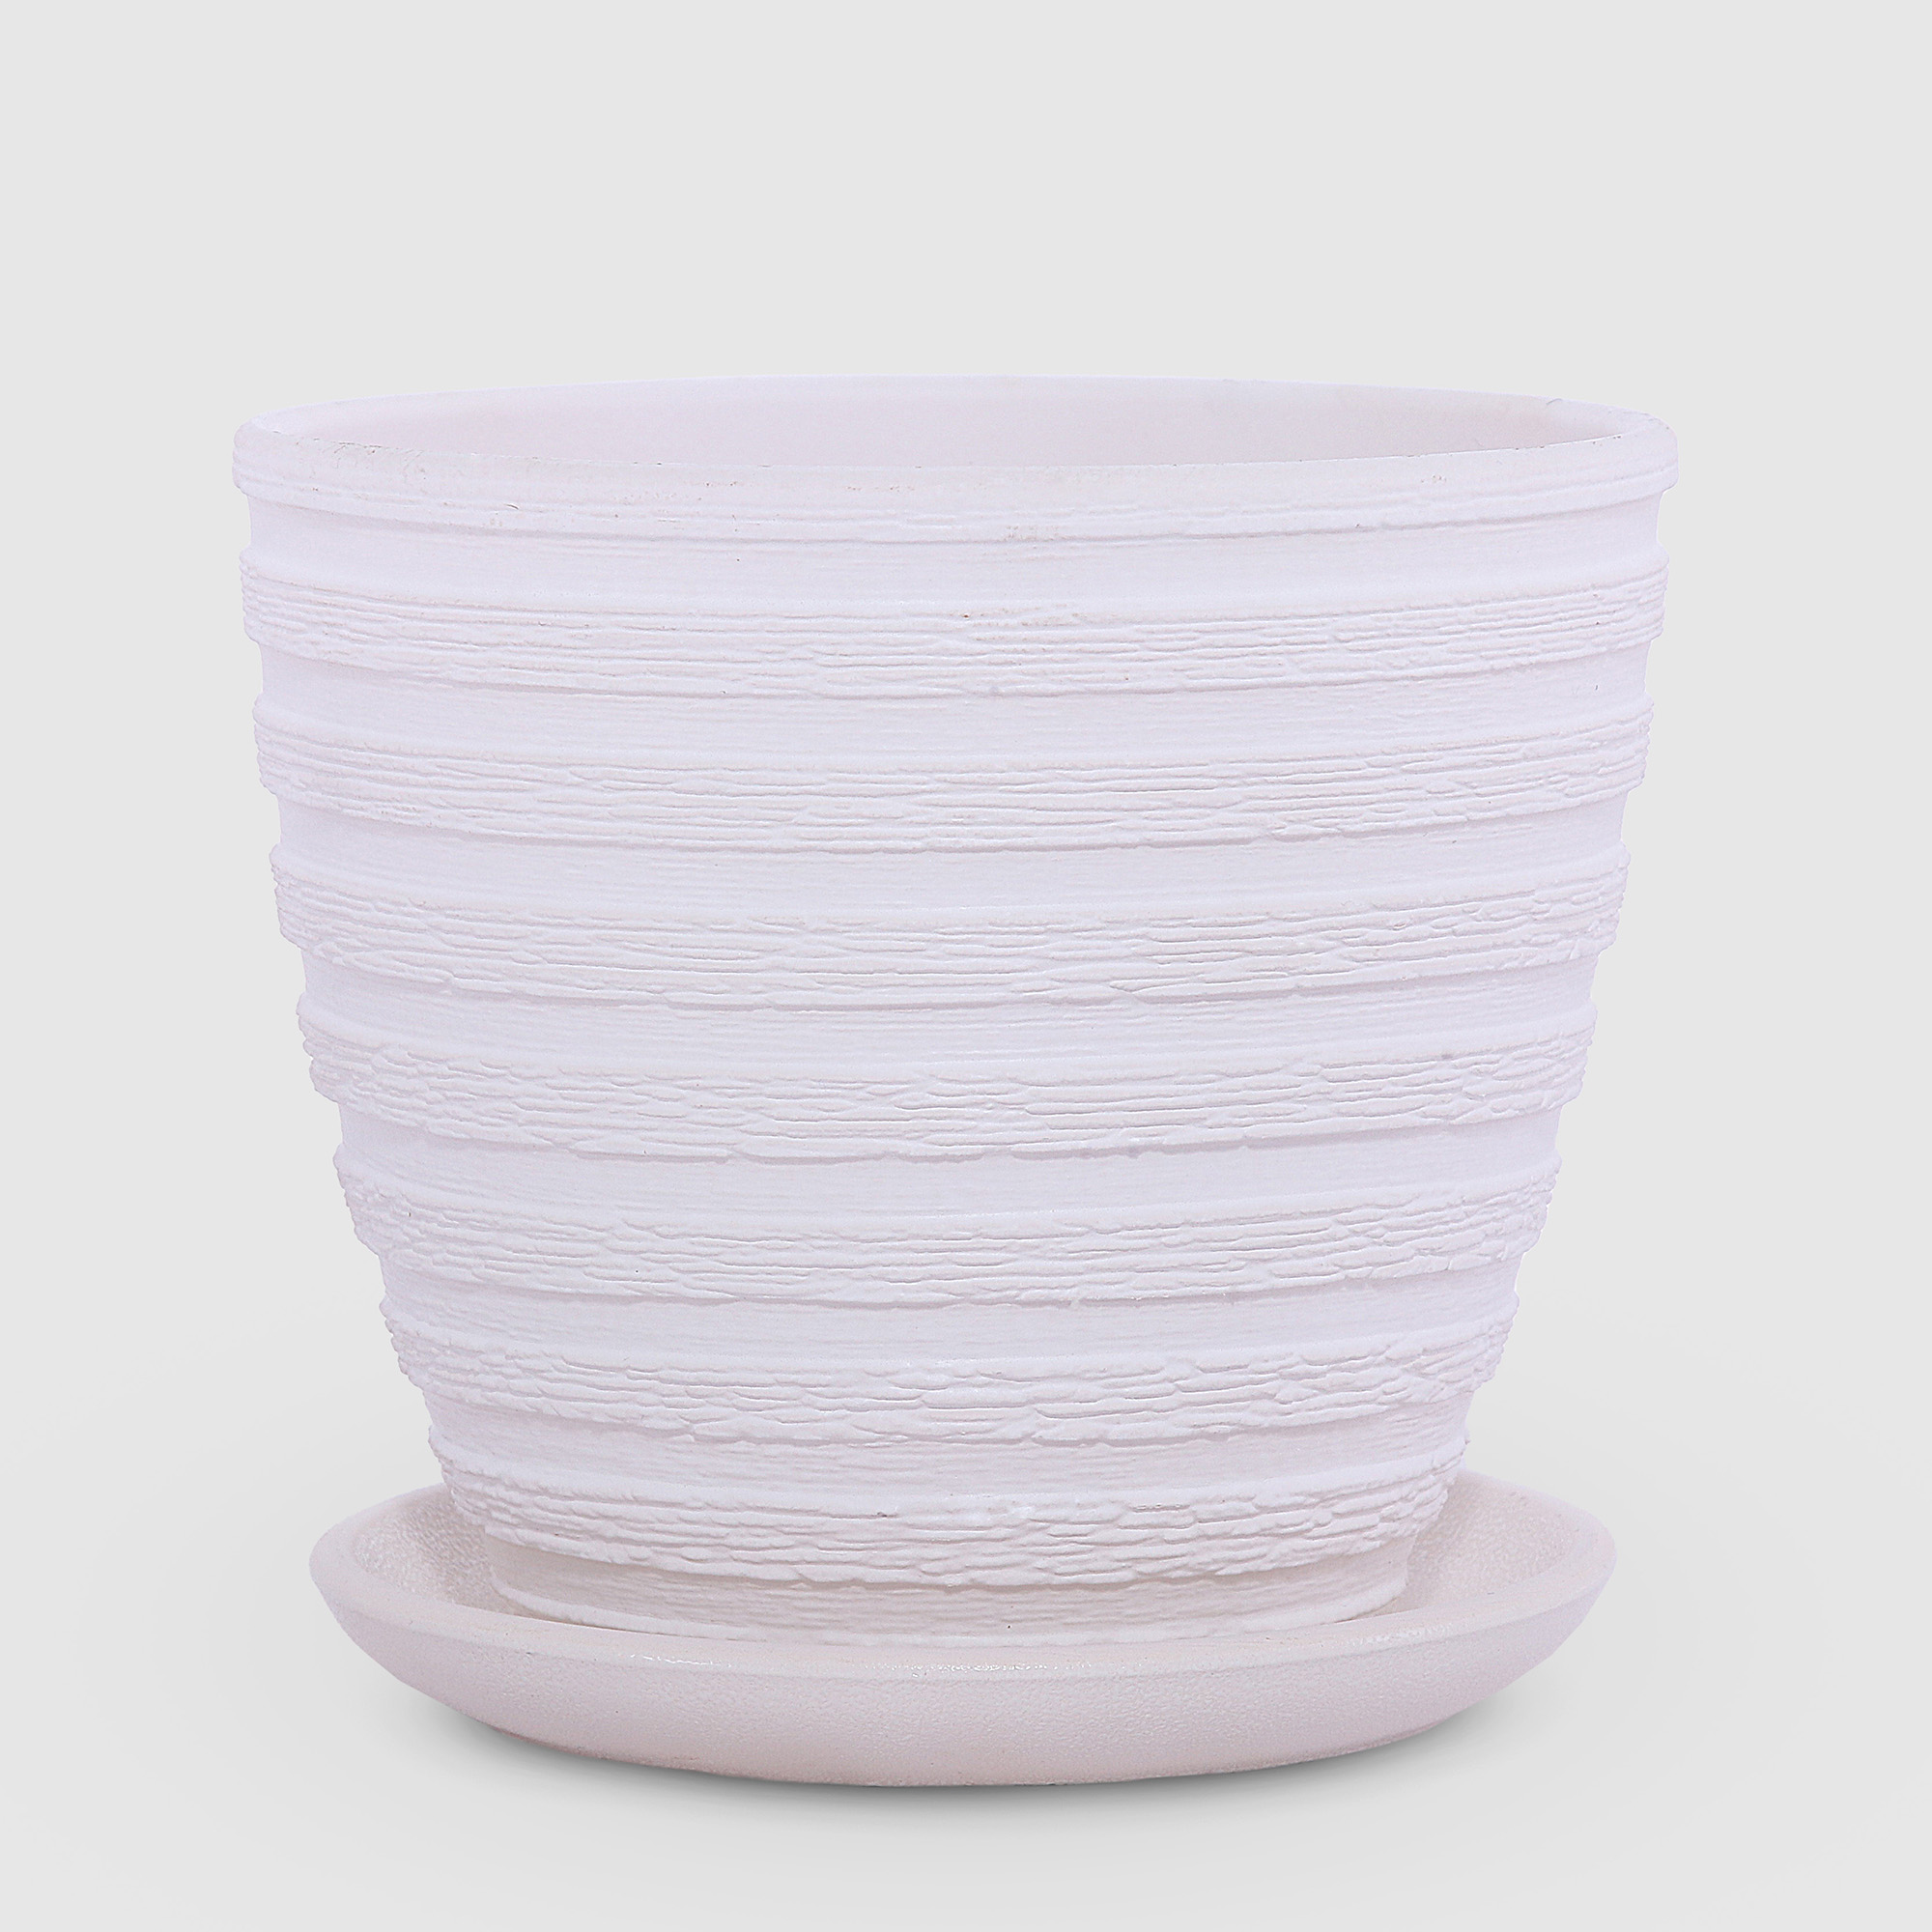 Керамический горшок с поддоном Композит Букле белый 15 см сушилка для посуды с поддоном 38×24×37 см белый